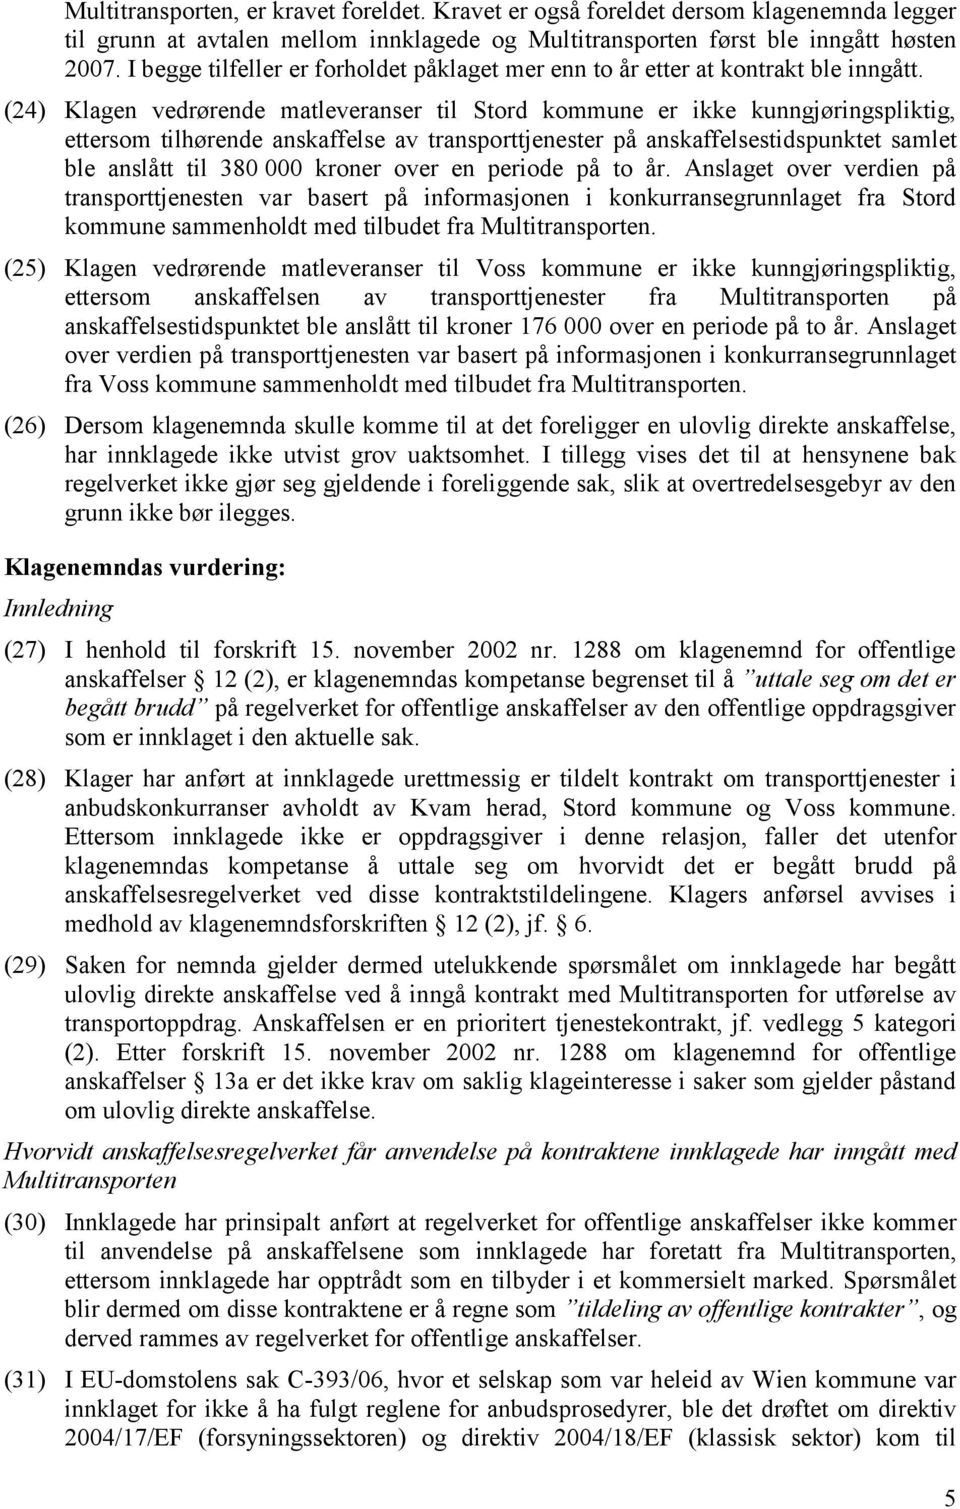 (24) Klagen vedrørende matleveranser til Stord kommune er ikke kunngjøringspliktig, ettersom tilhørende anskaffelse av transporttjenester på anskaffelsestidspunktet samlet ble anslått til 380 000